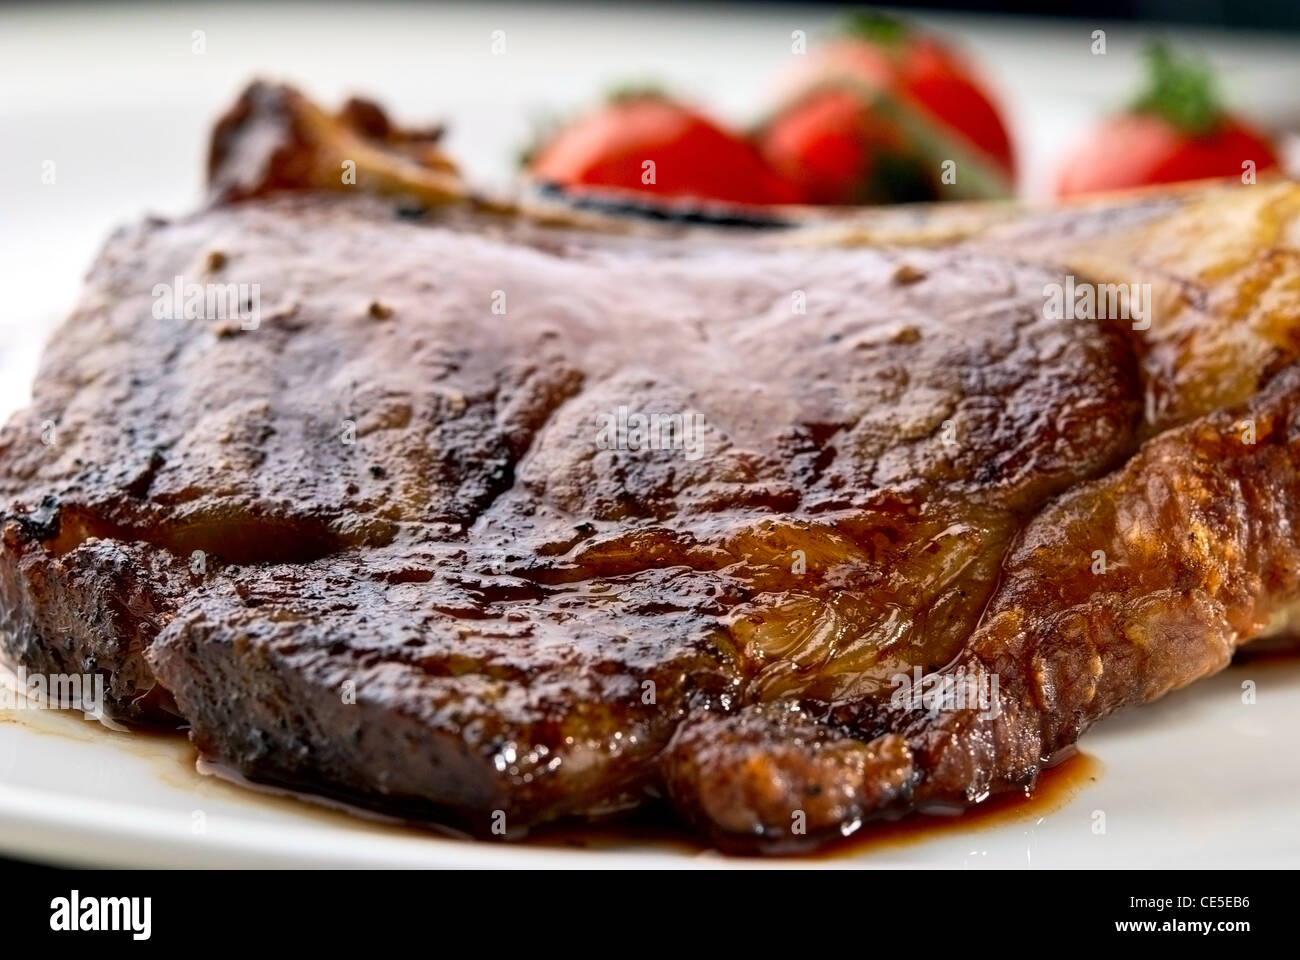 Steak Club. Sur l'os de veau. Macro de la viande grillée côtes sur plaque blanche avec des tomates cerises et dark hot sauce Banque D'Images